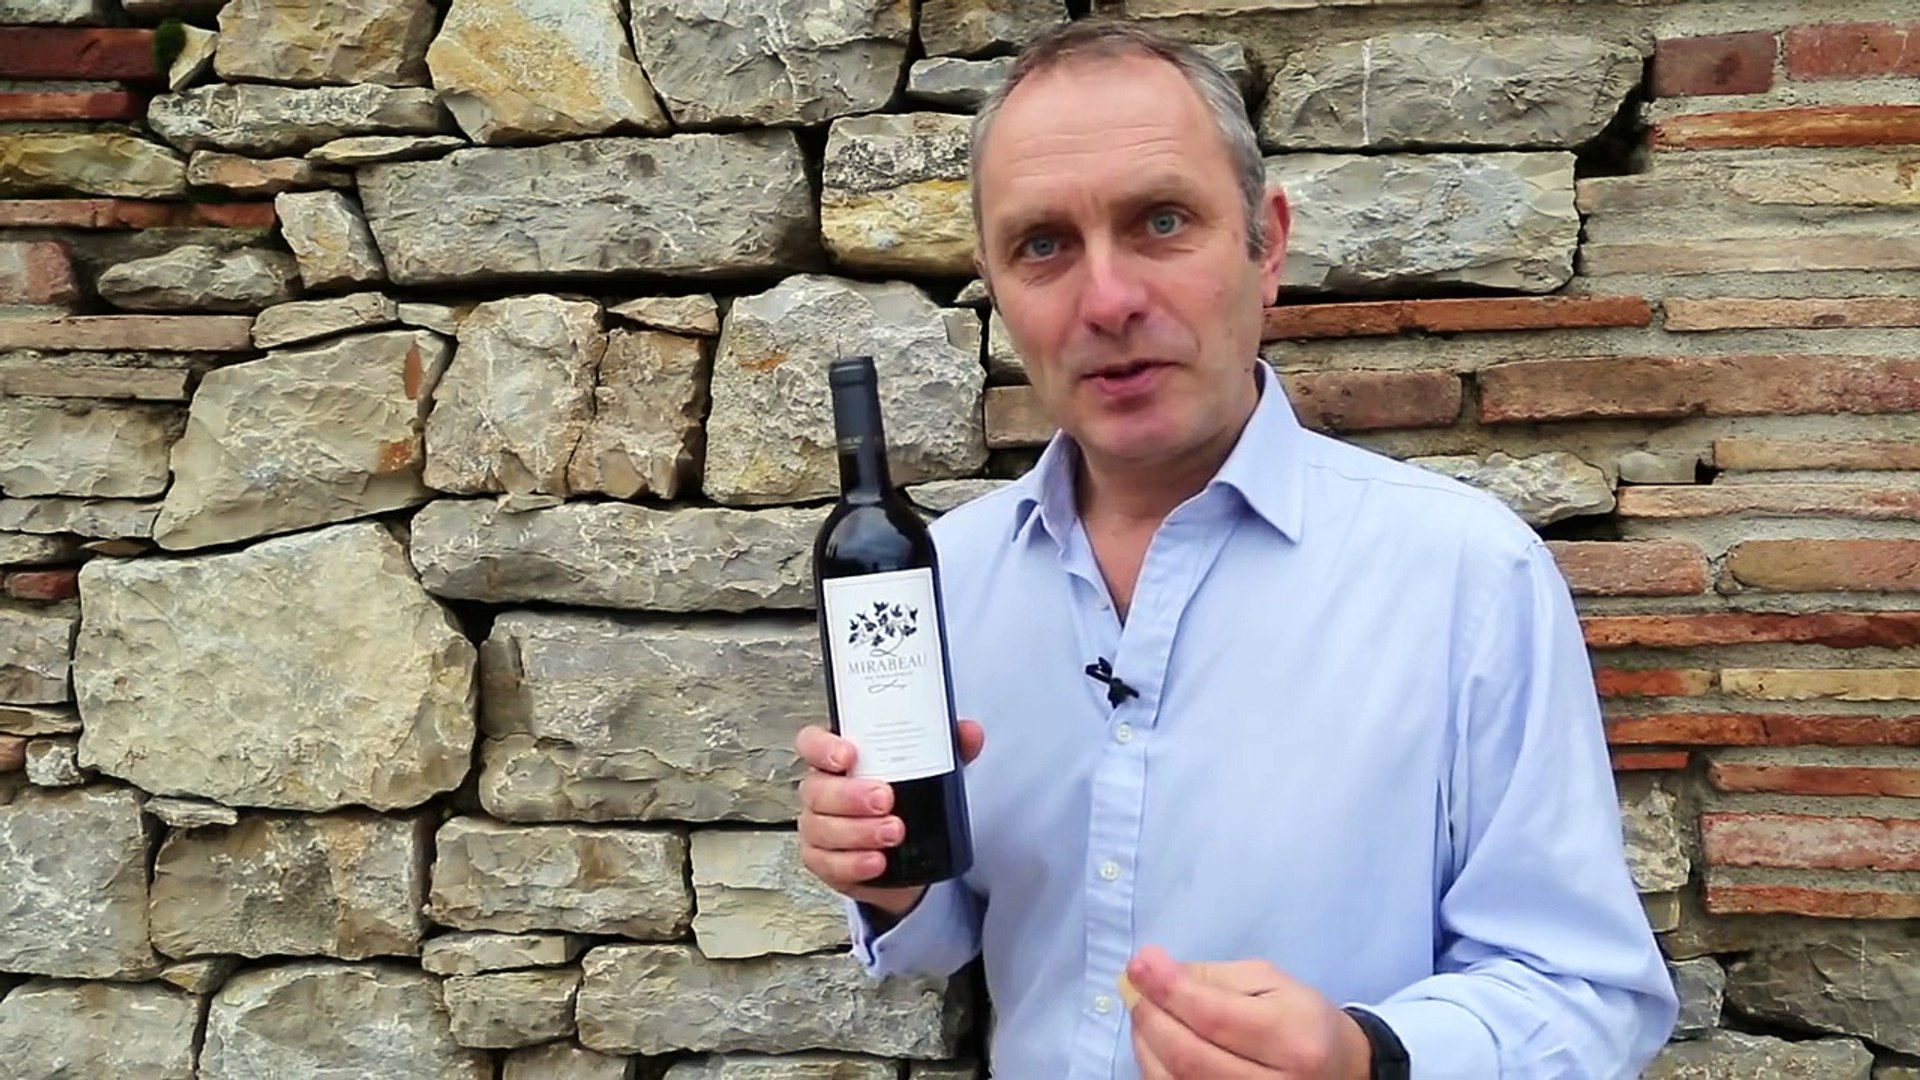 Comment ouvrir une bouteille de vin avec une chaussure - Vidéo Dailymotion